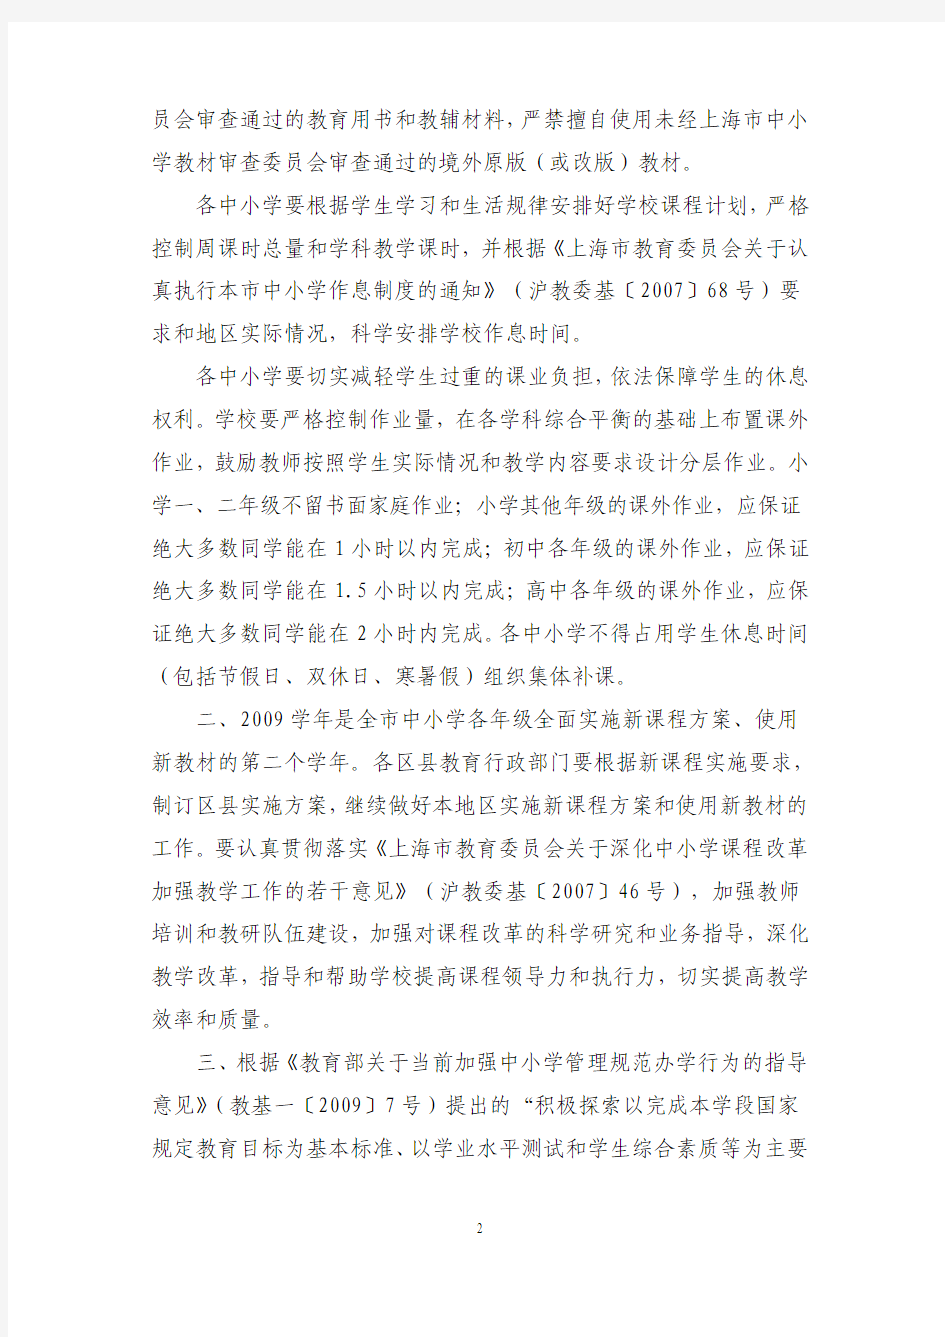 上海市教育委员会关于印发上海市中小学2009学年度课程计划及其说明的通知